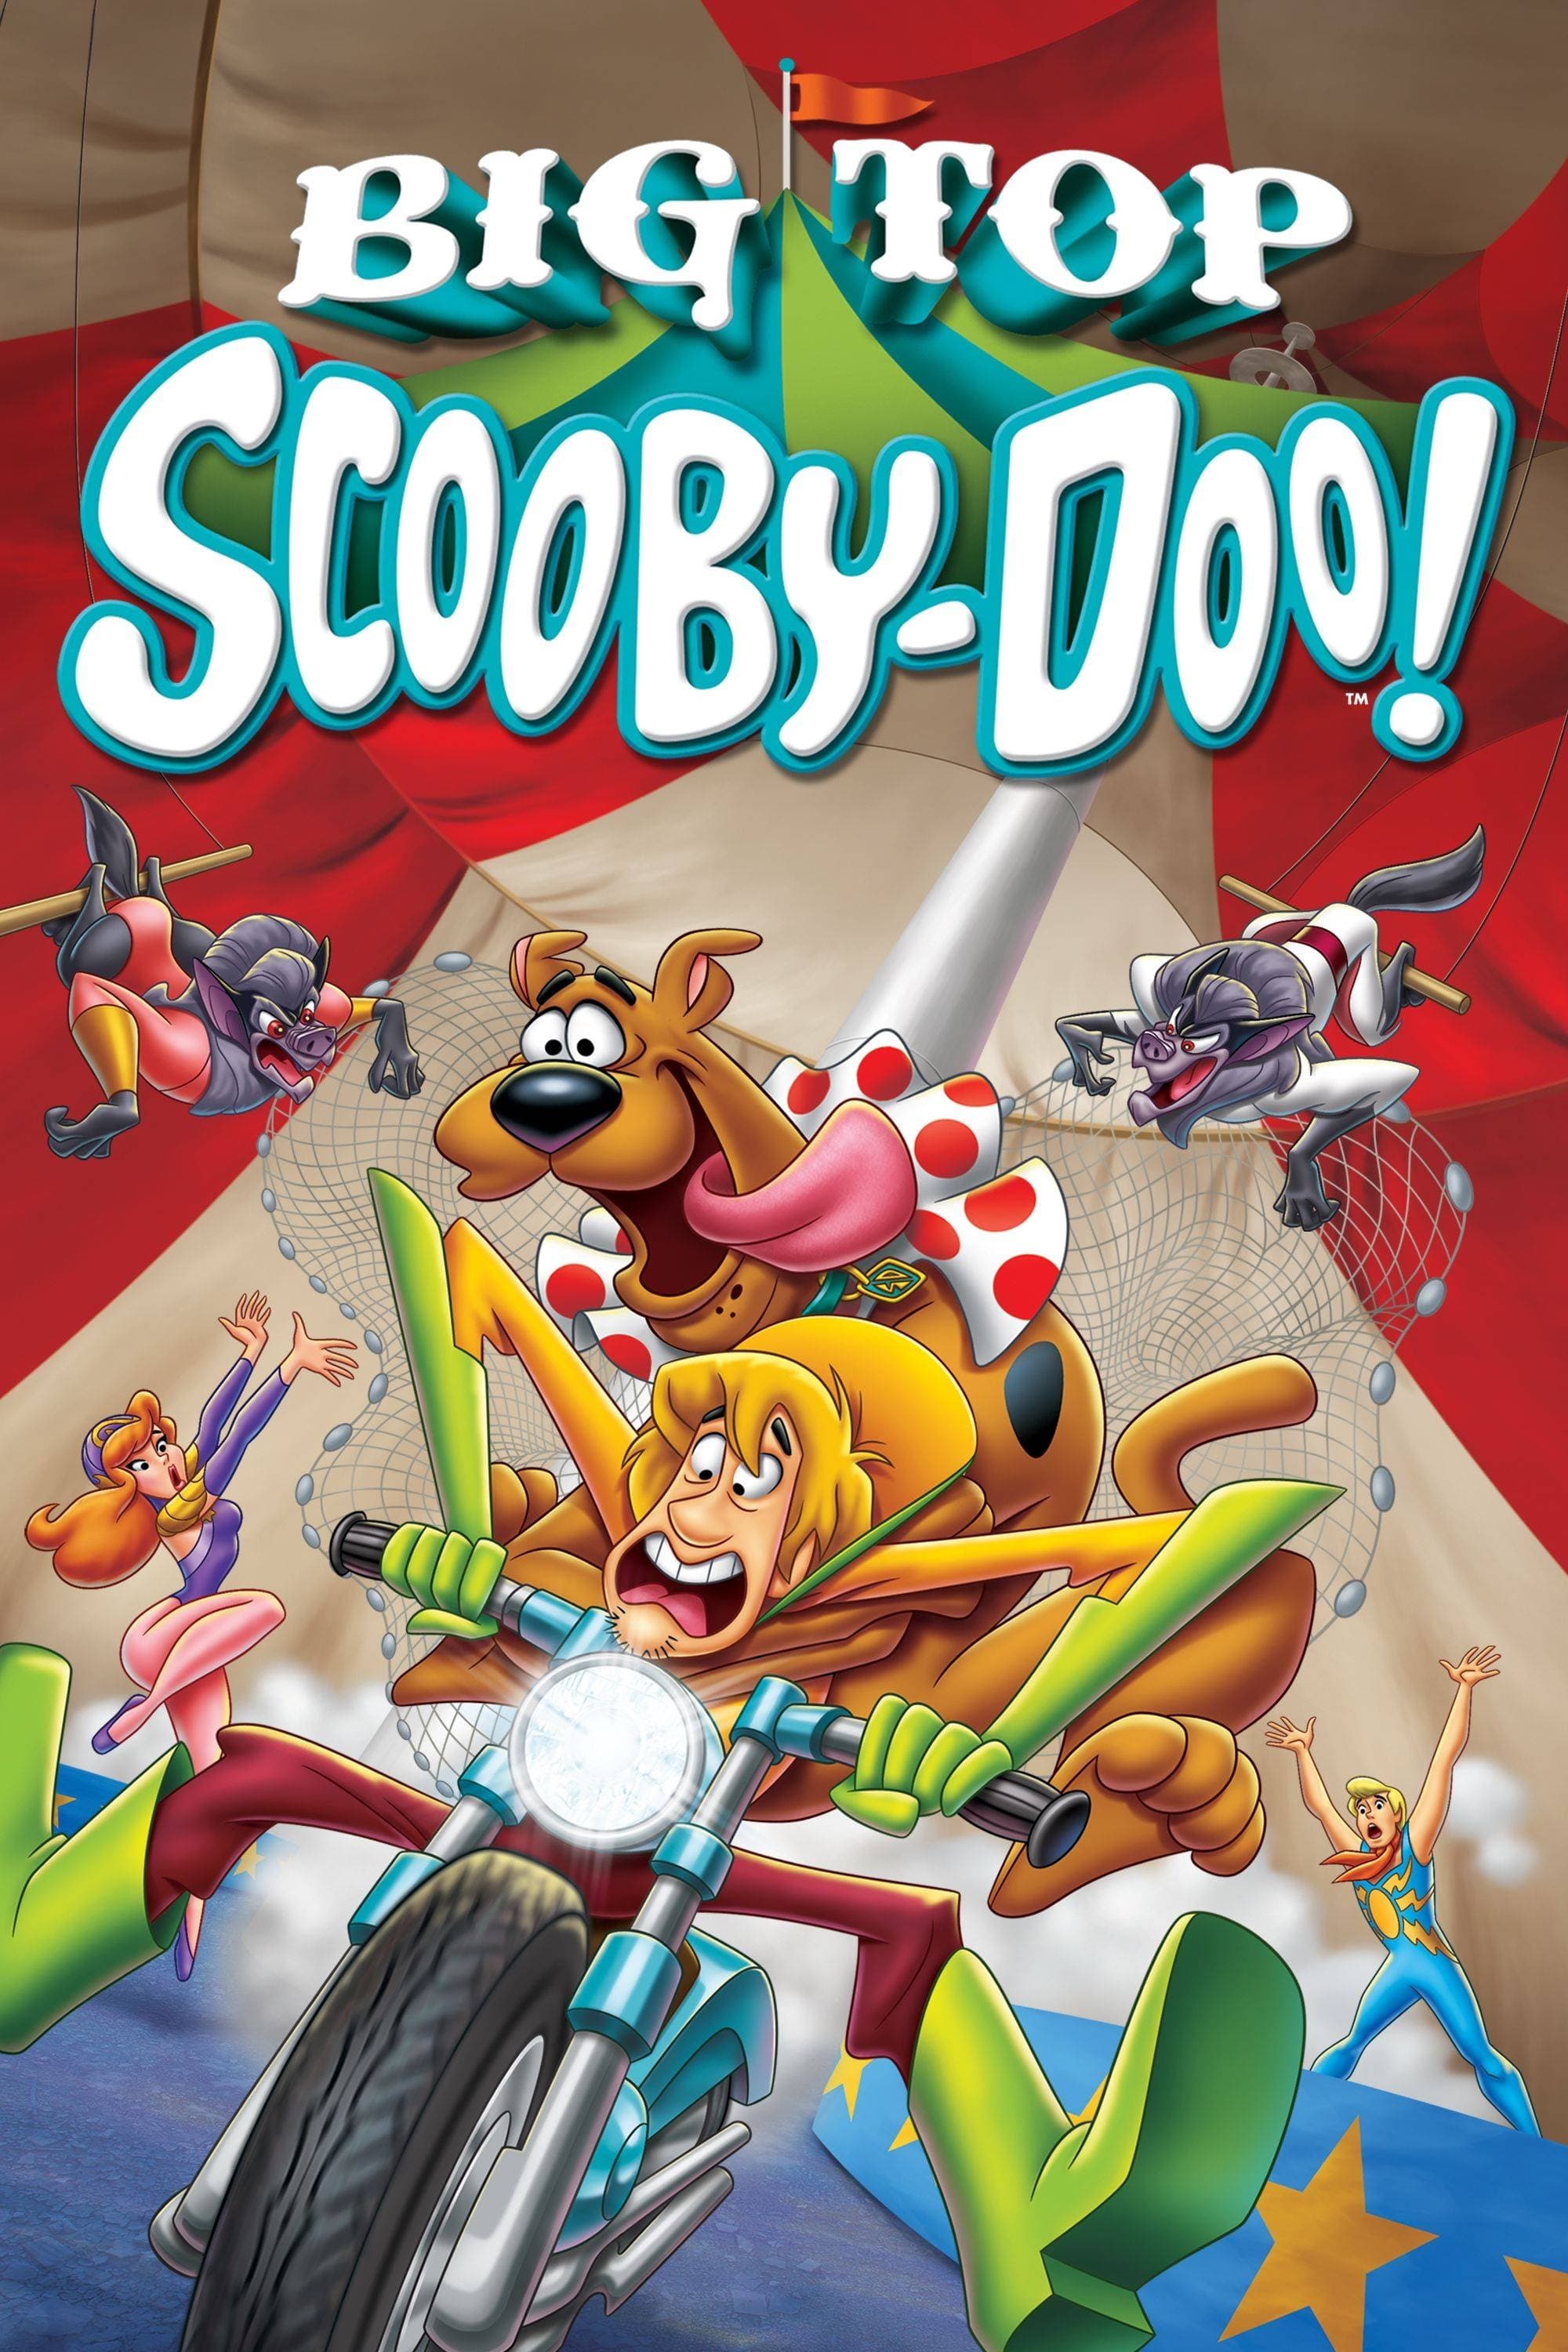 Scooby-Doo Misterio en el circo